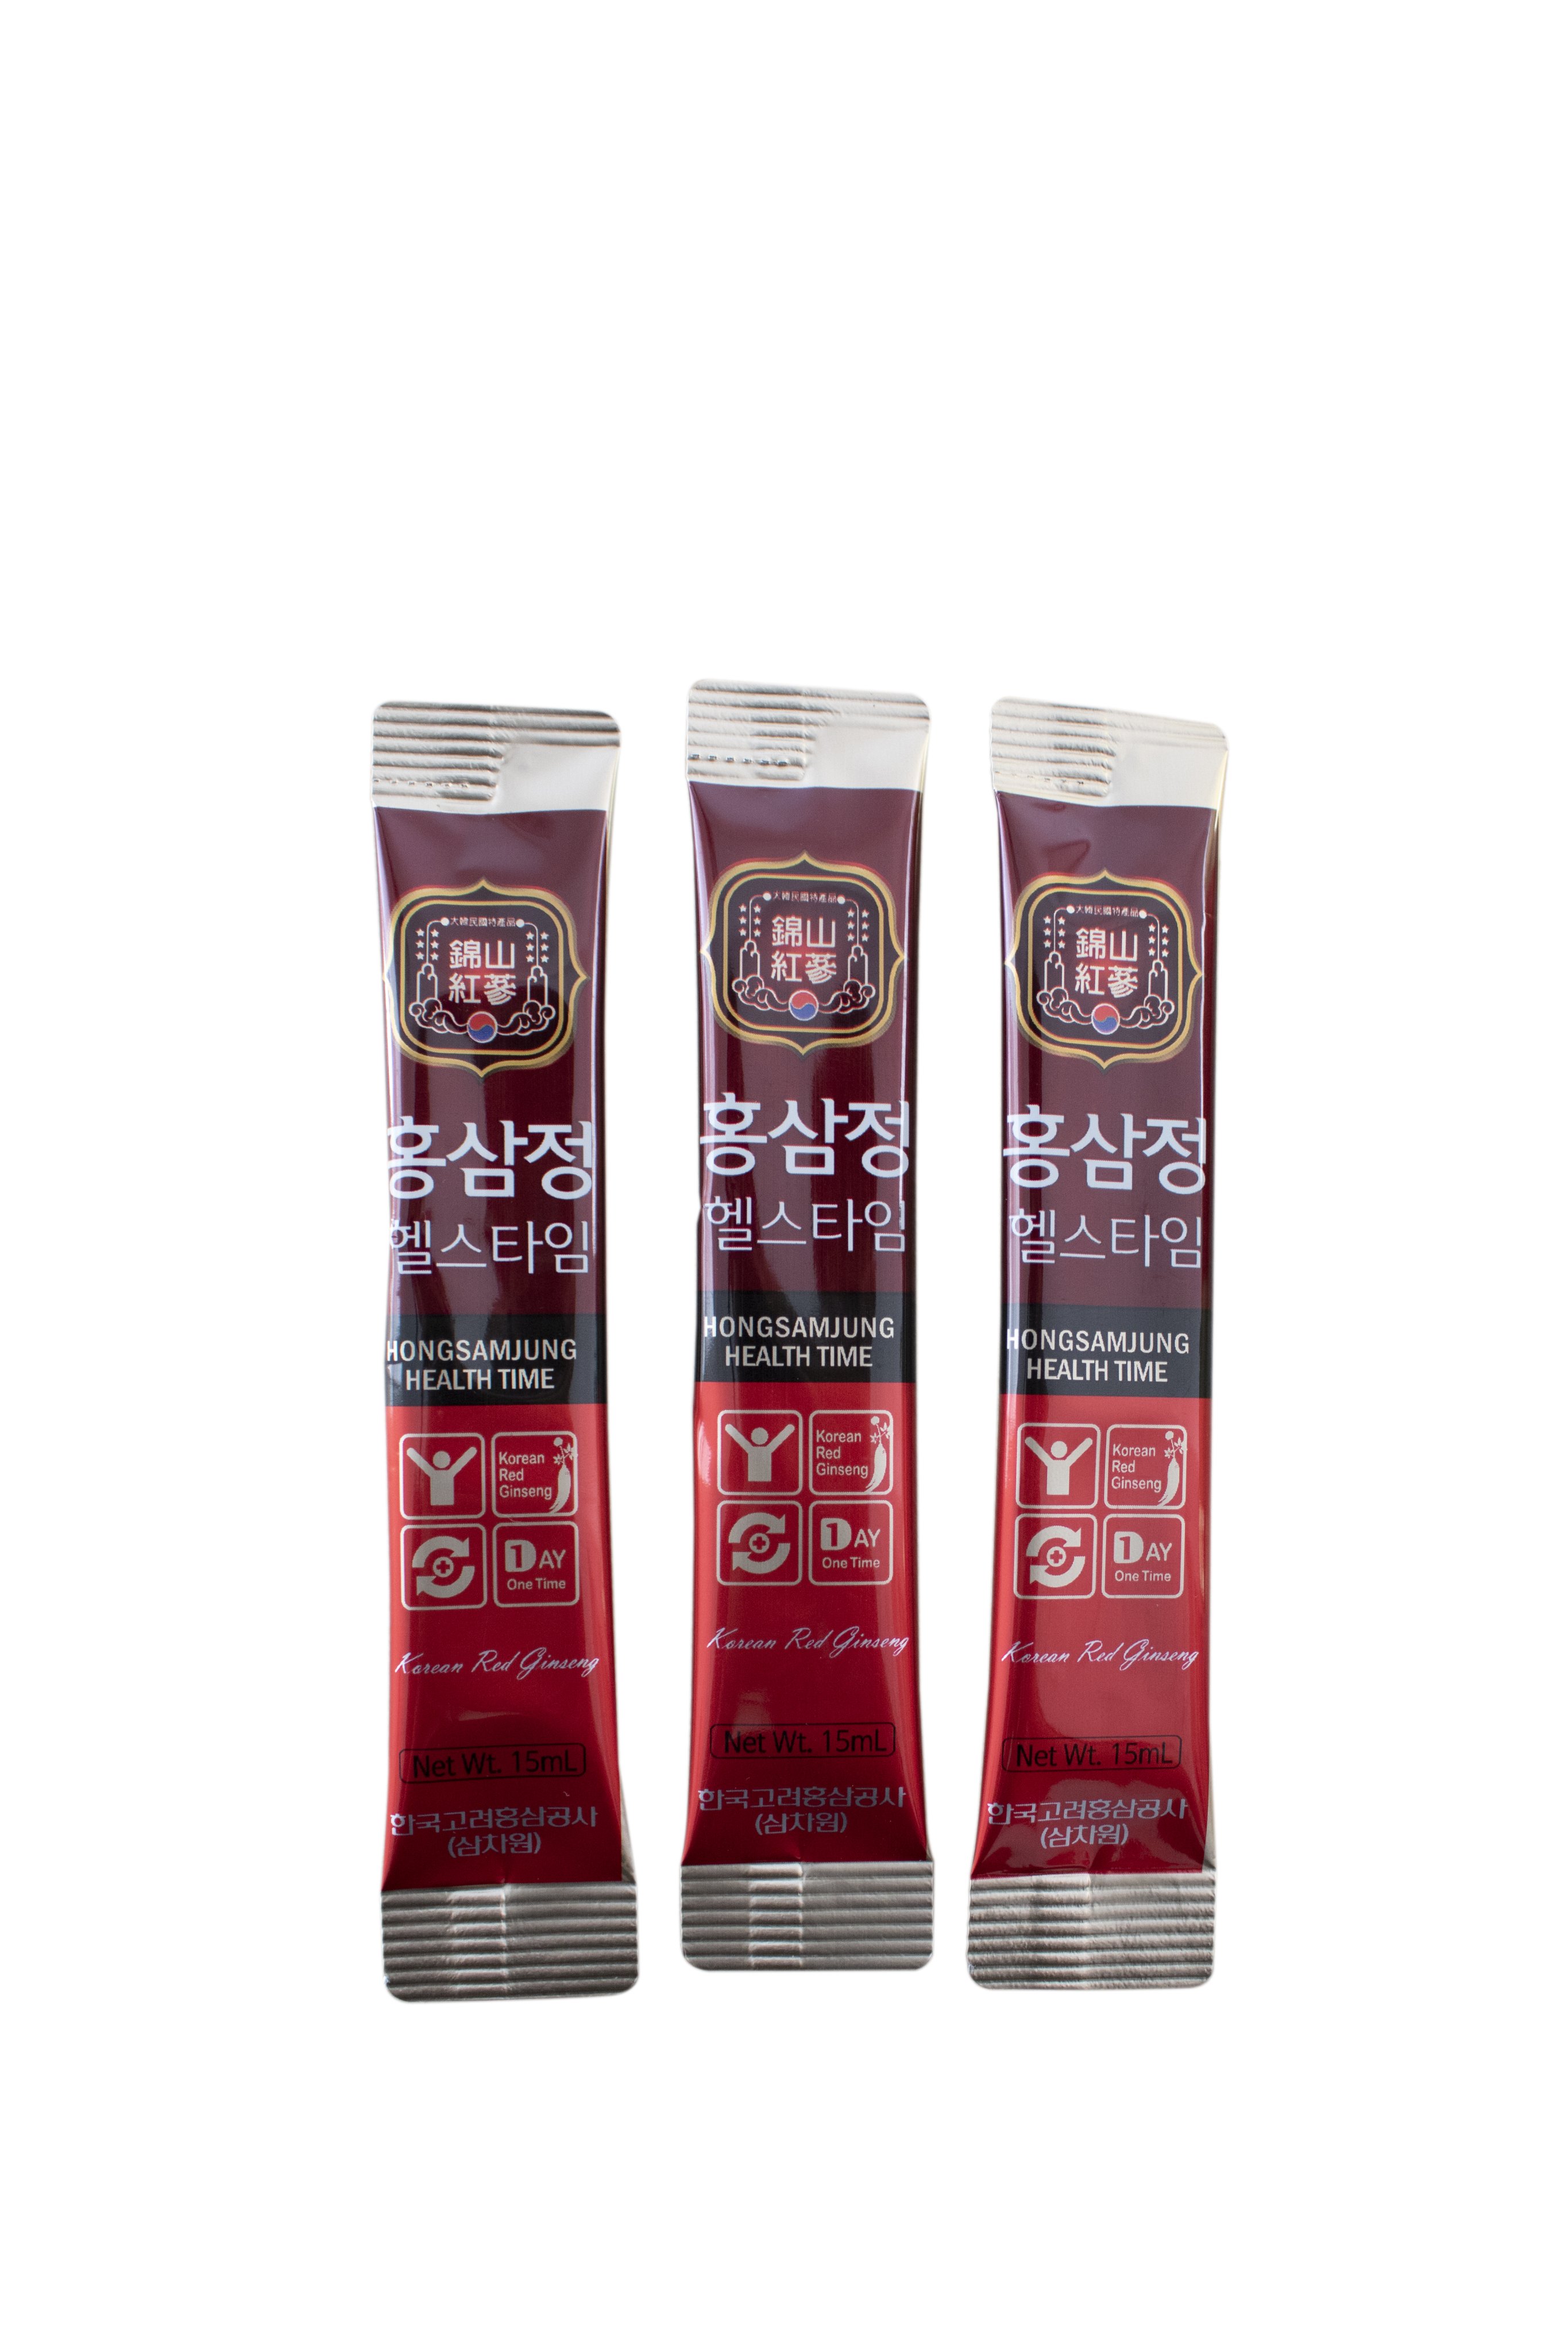 Tinh Chất Hồng Sâm Cô Đặc Dạng Gói Korean Red Ginseng 